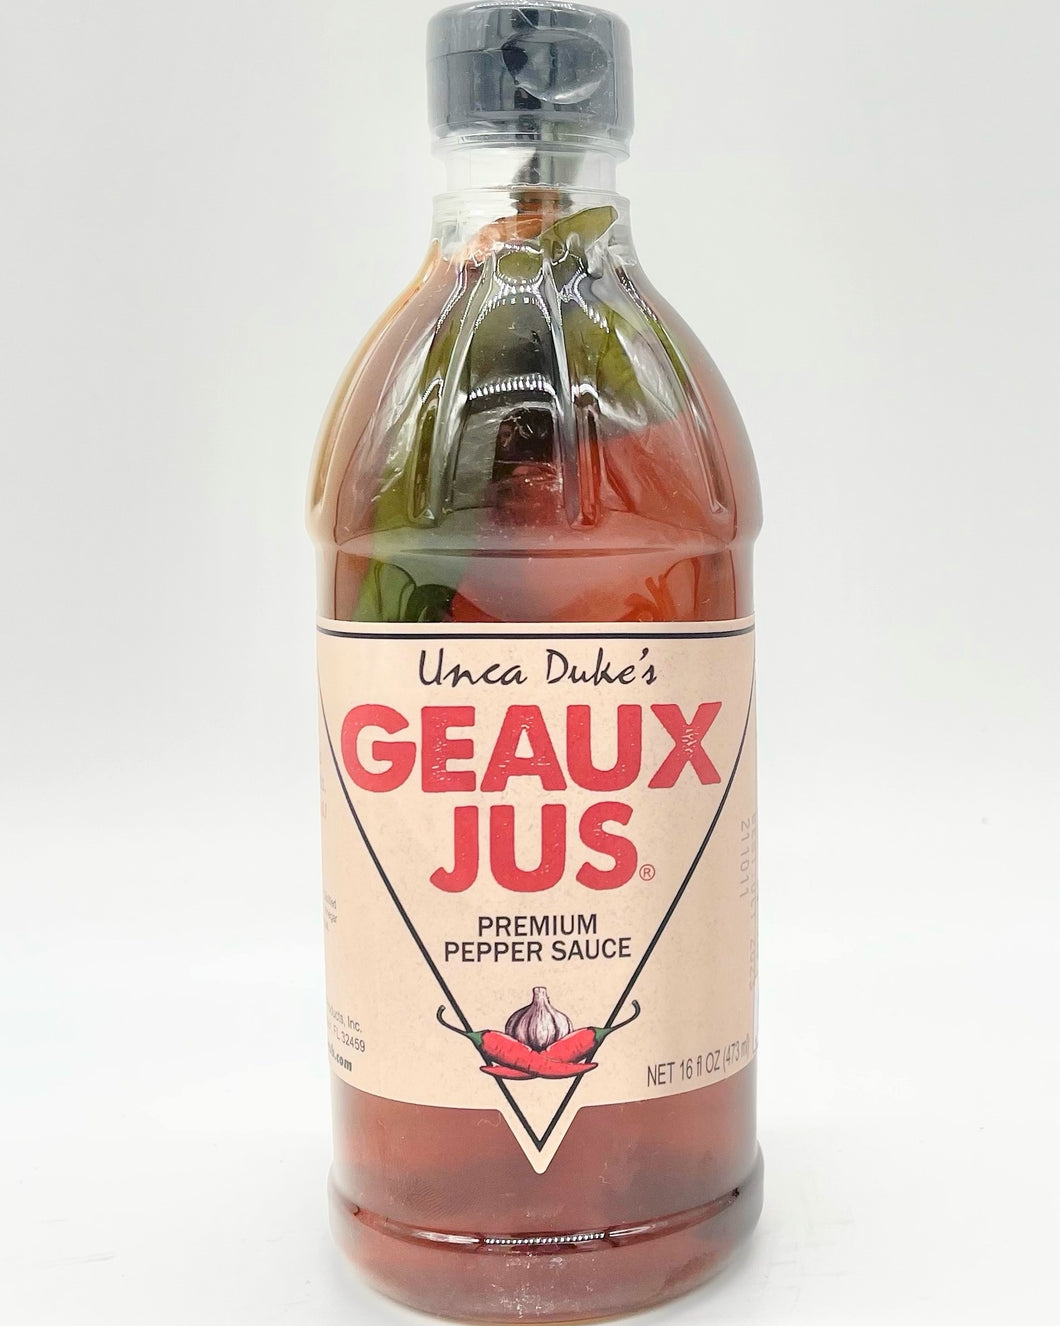 Unca Duke's Geaux Jus Premium Pepper Sauce